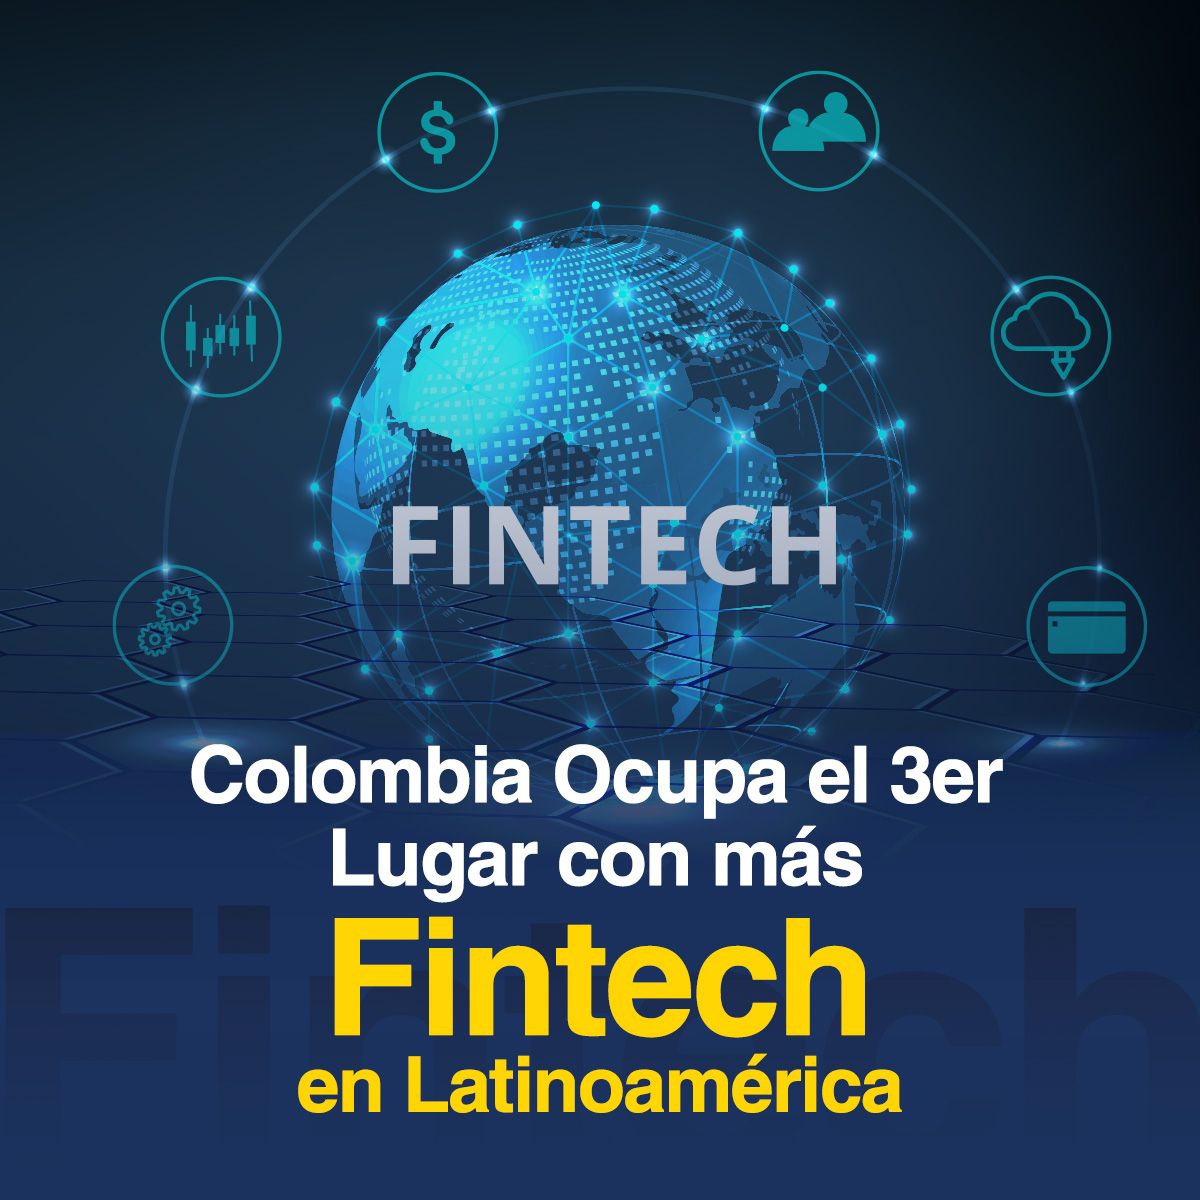 Colombia Ocupa el 3er Lugar con más Fintech en Latinoamérica